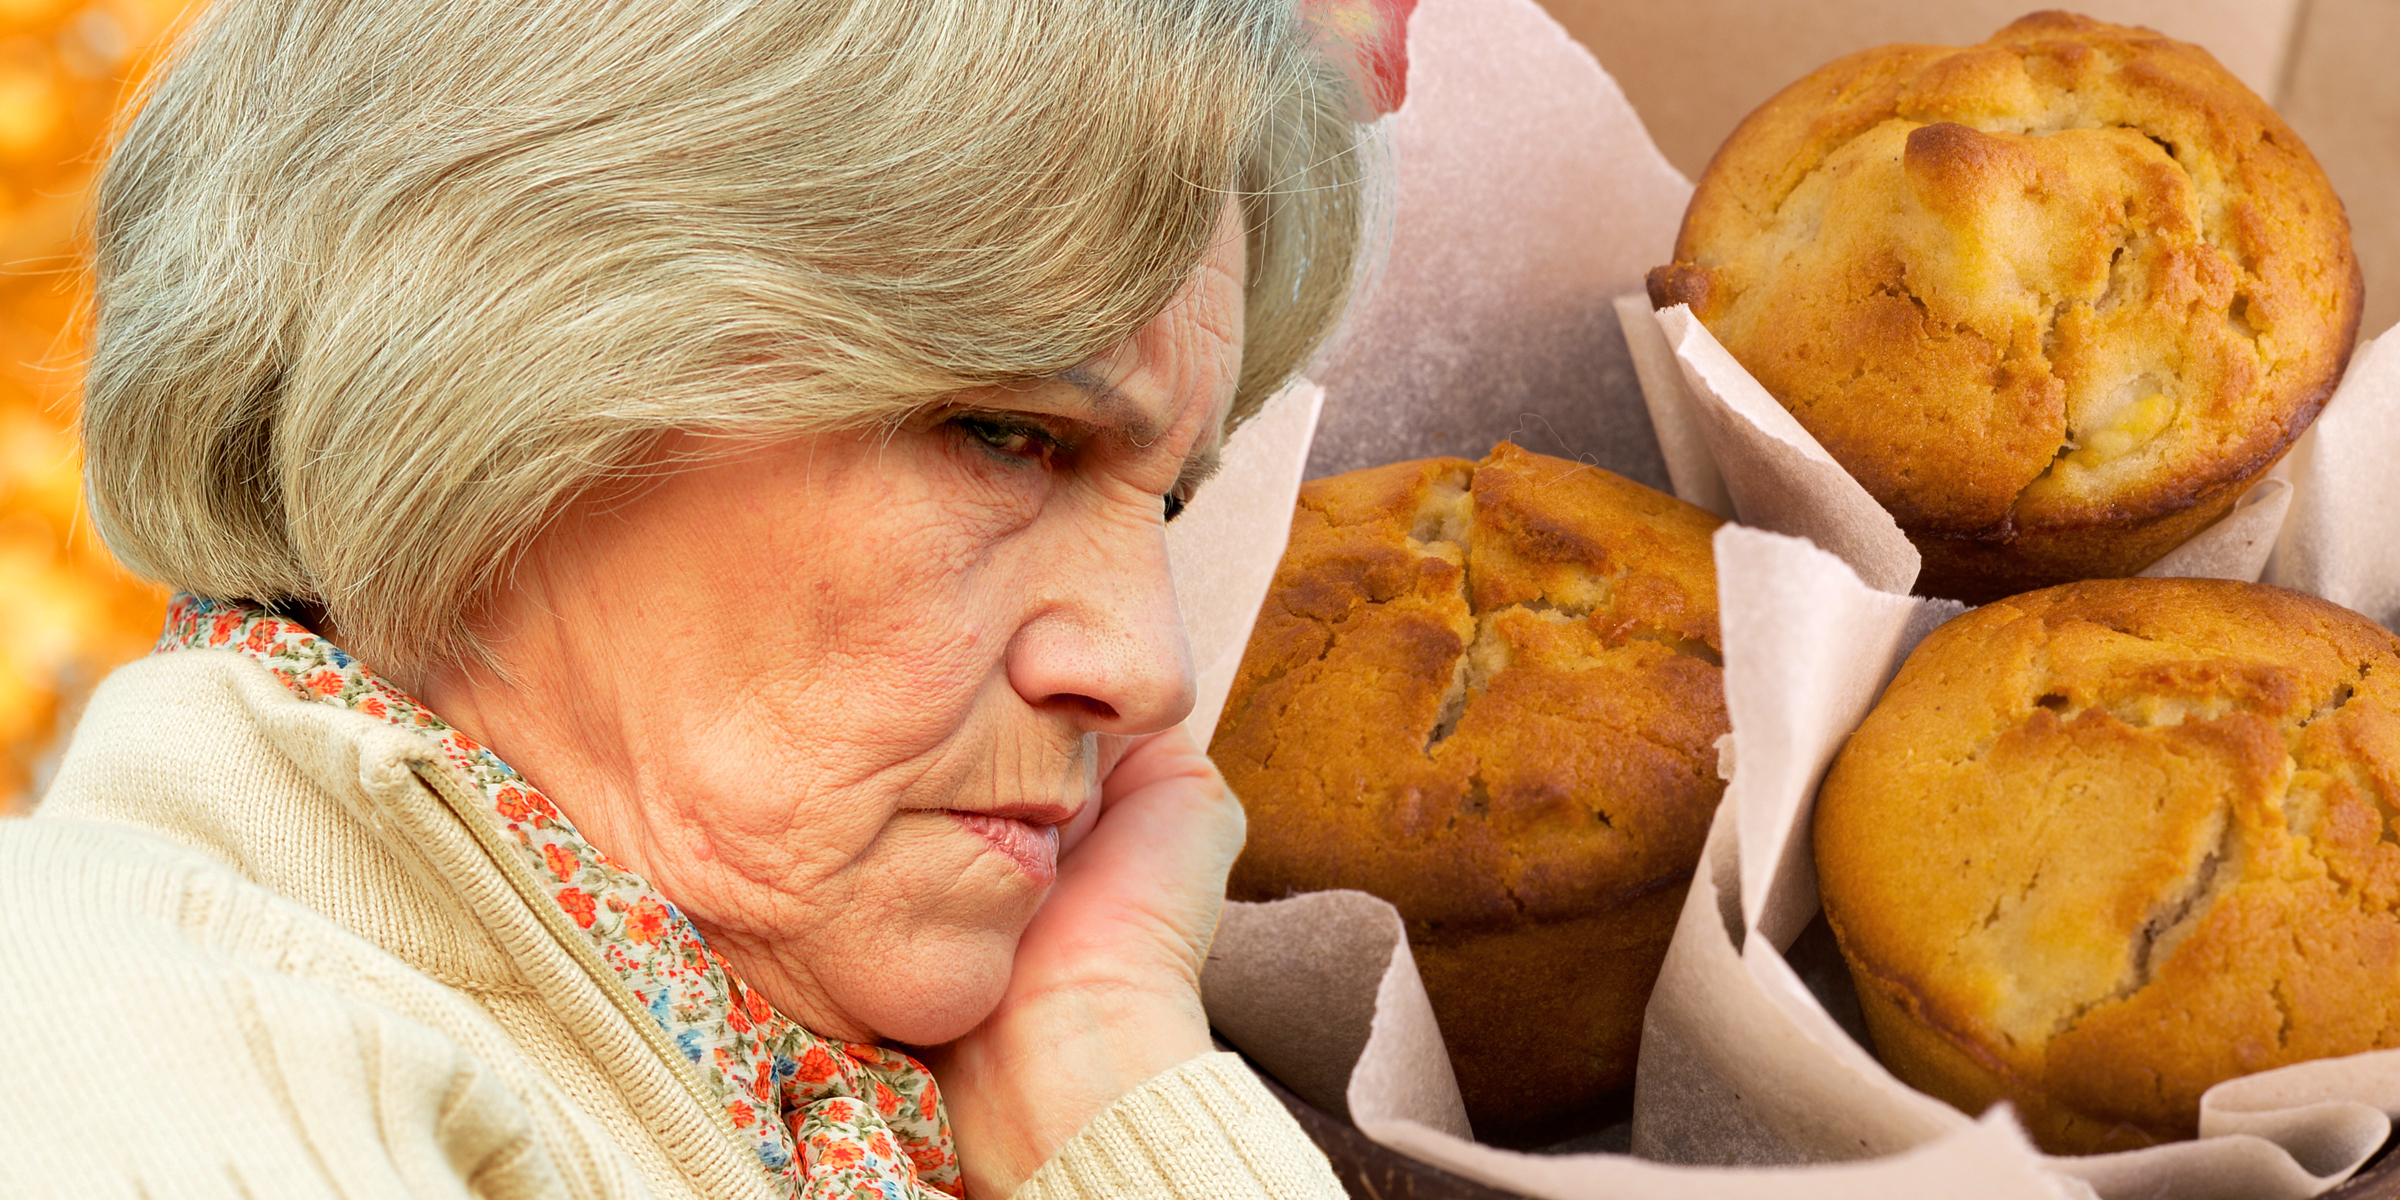 An elderly woman | Cupcakes | Source: Shutterstock